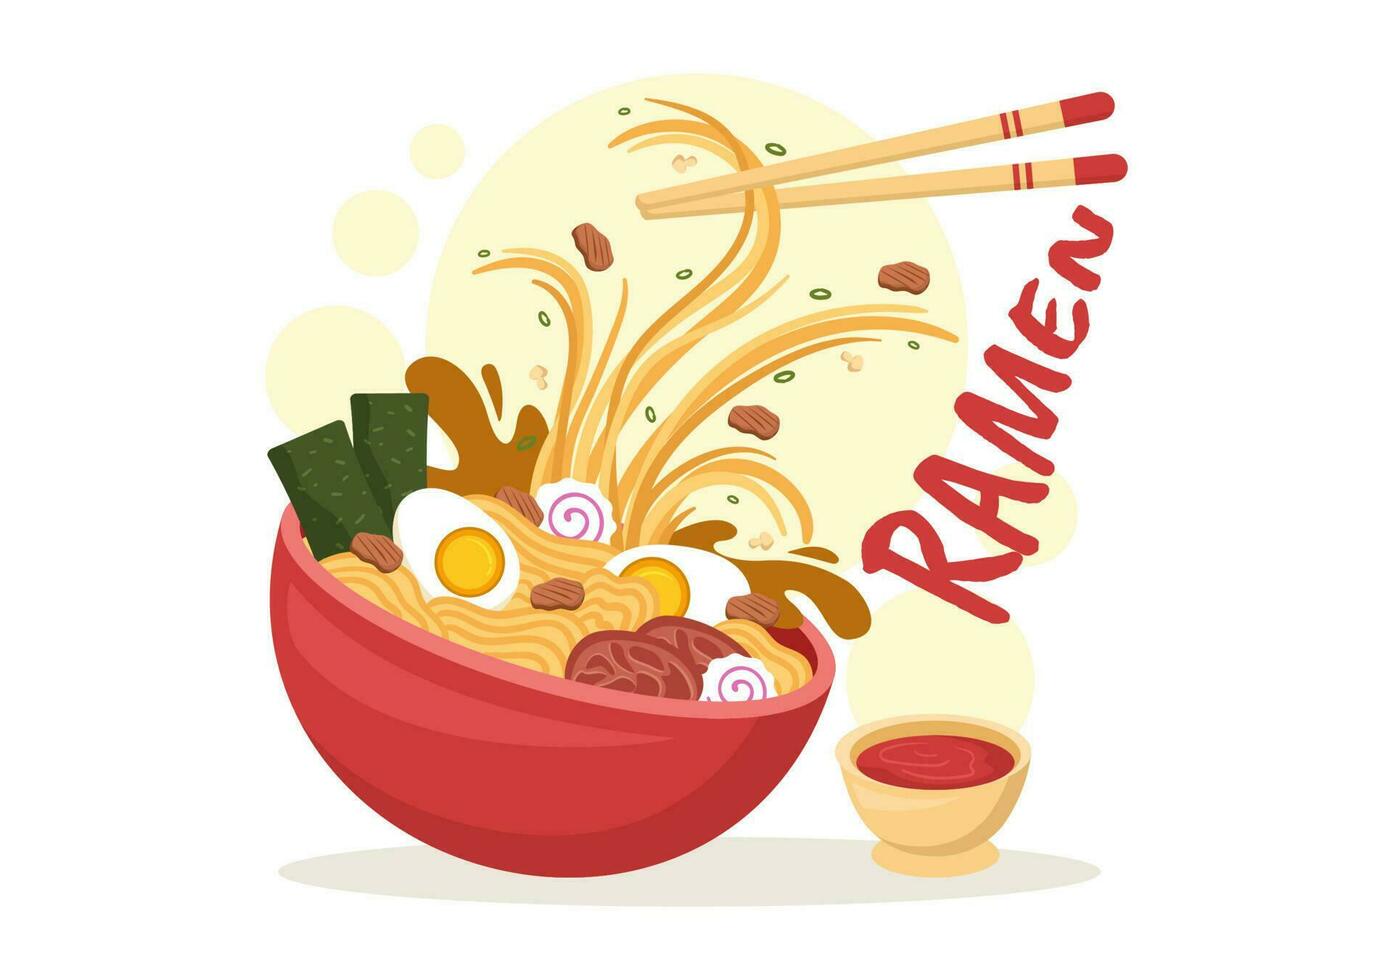 Ramen Vektor Illustration von japanisch Essen mit Nudel, Essstäbchen, Miso Suppe, Ei gekocht und gegrillt nori im eben Karikatur Hand gezeichnet Vorlagen